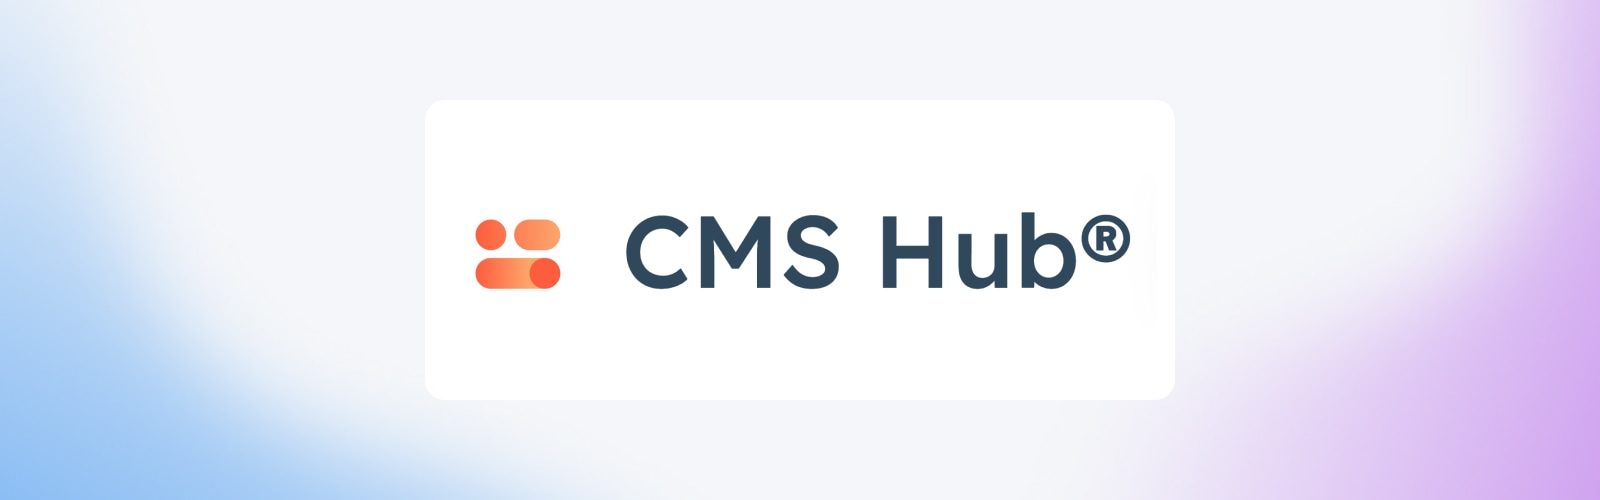 CMS Hub logo